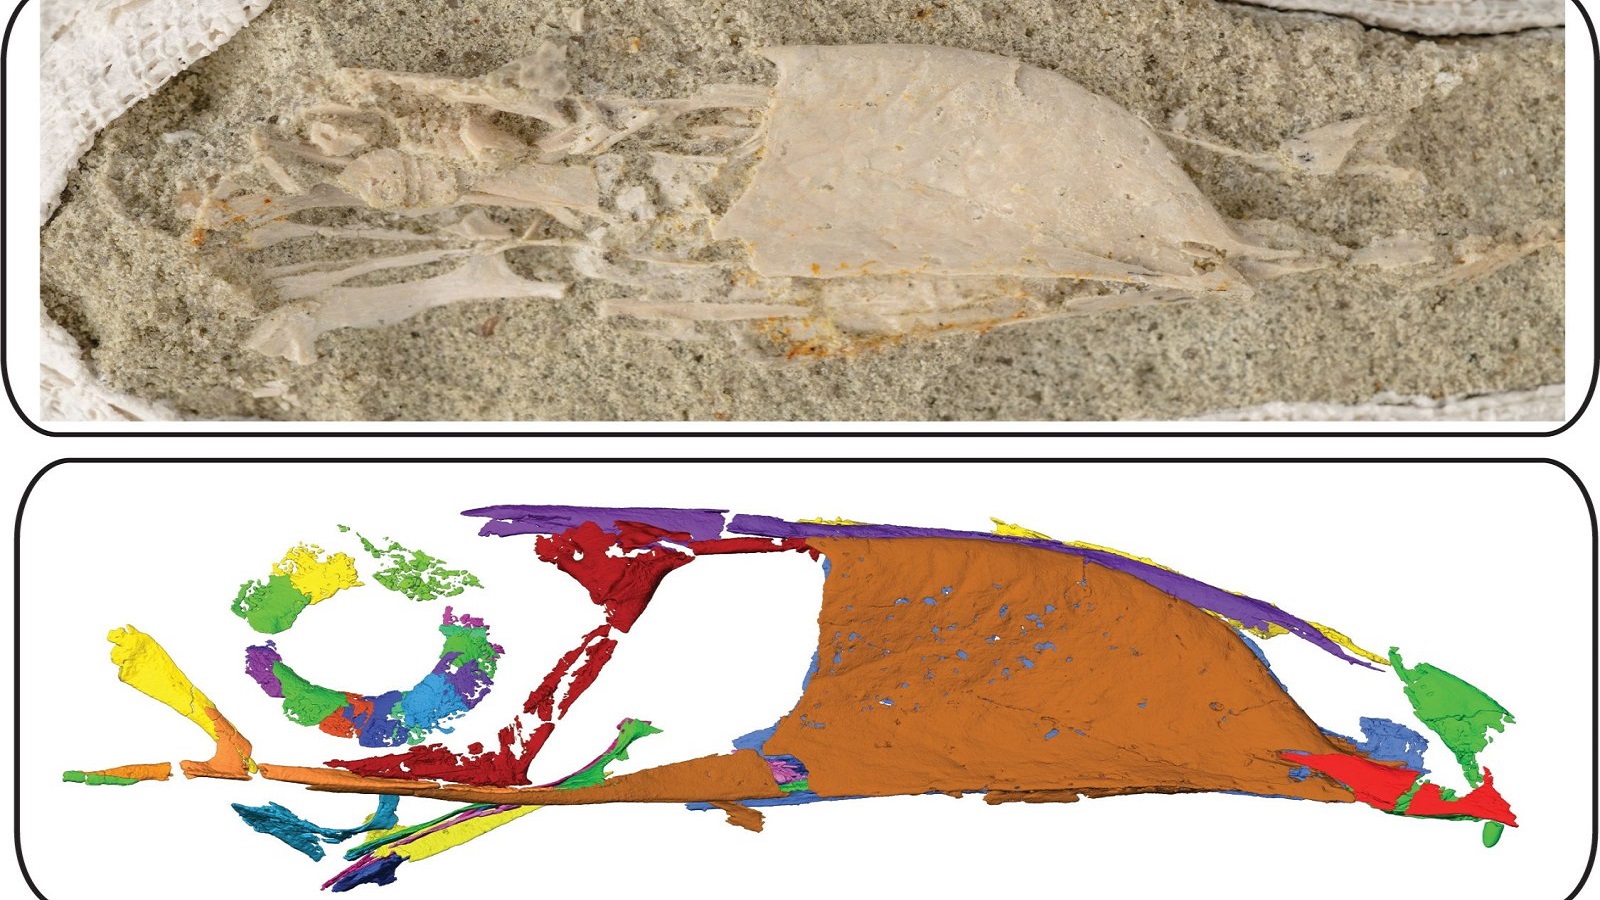 المسح يظهر تنوع فصائل الطيور التي عاشت في زمن الديناصورات